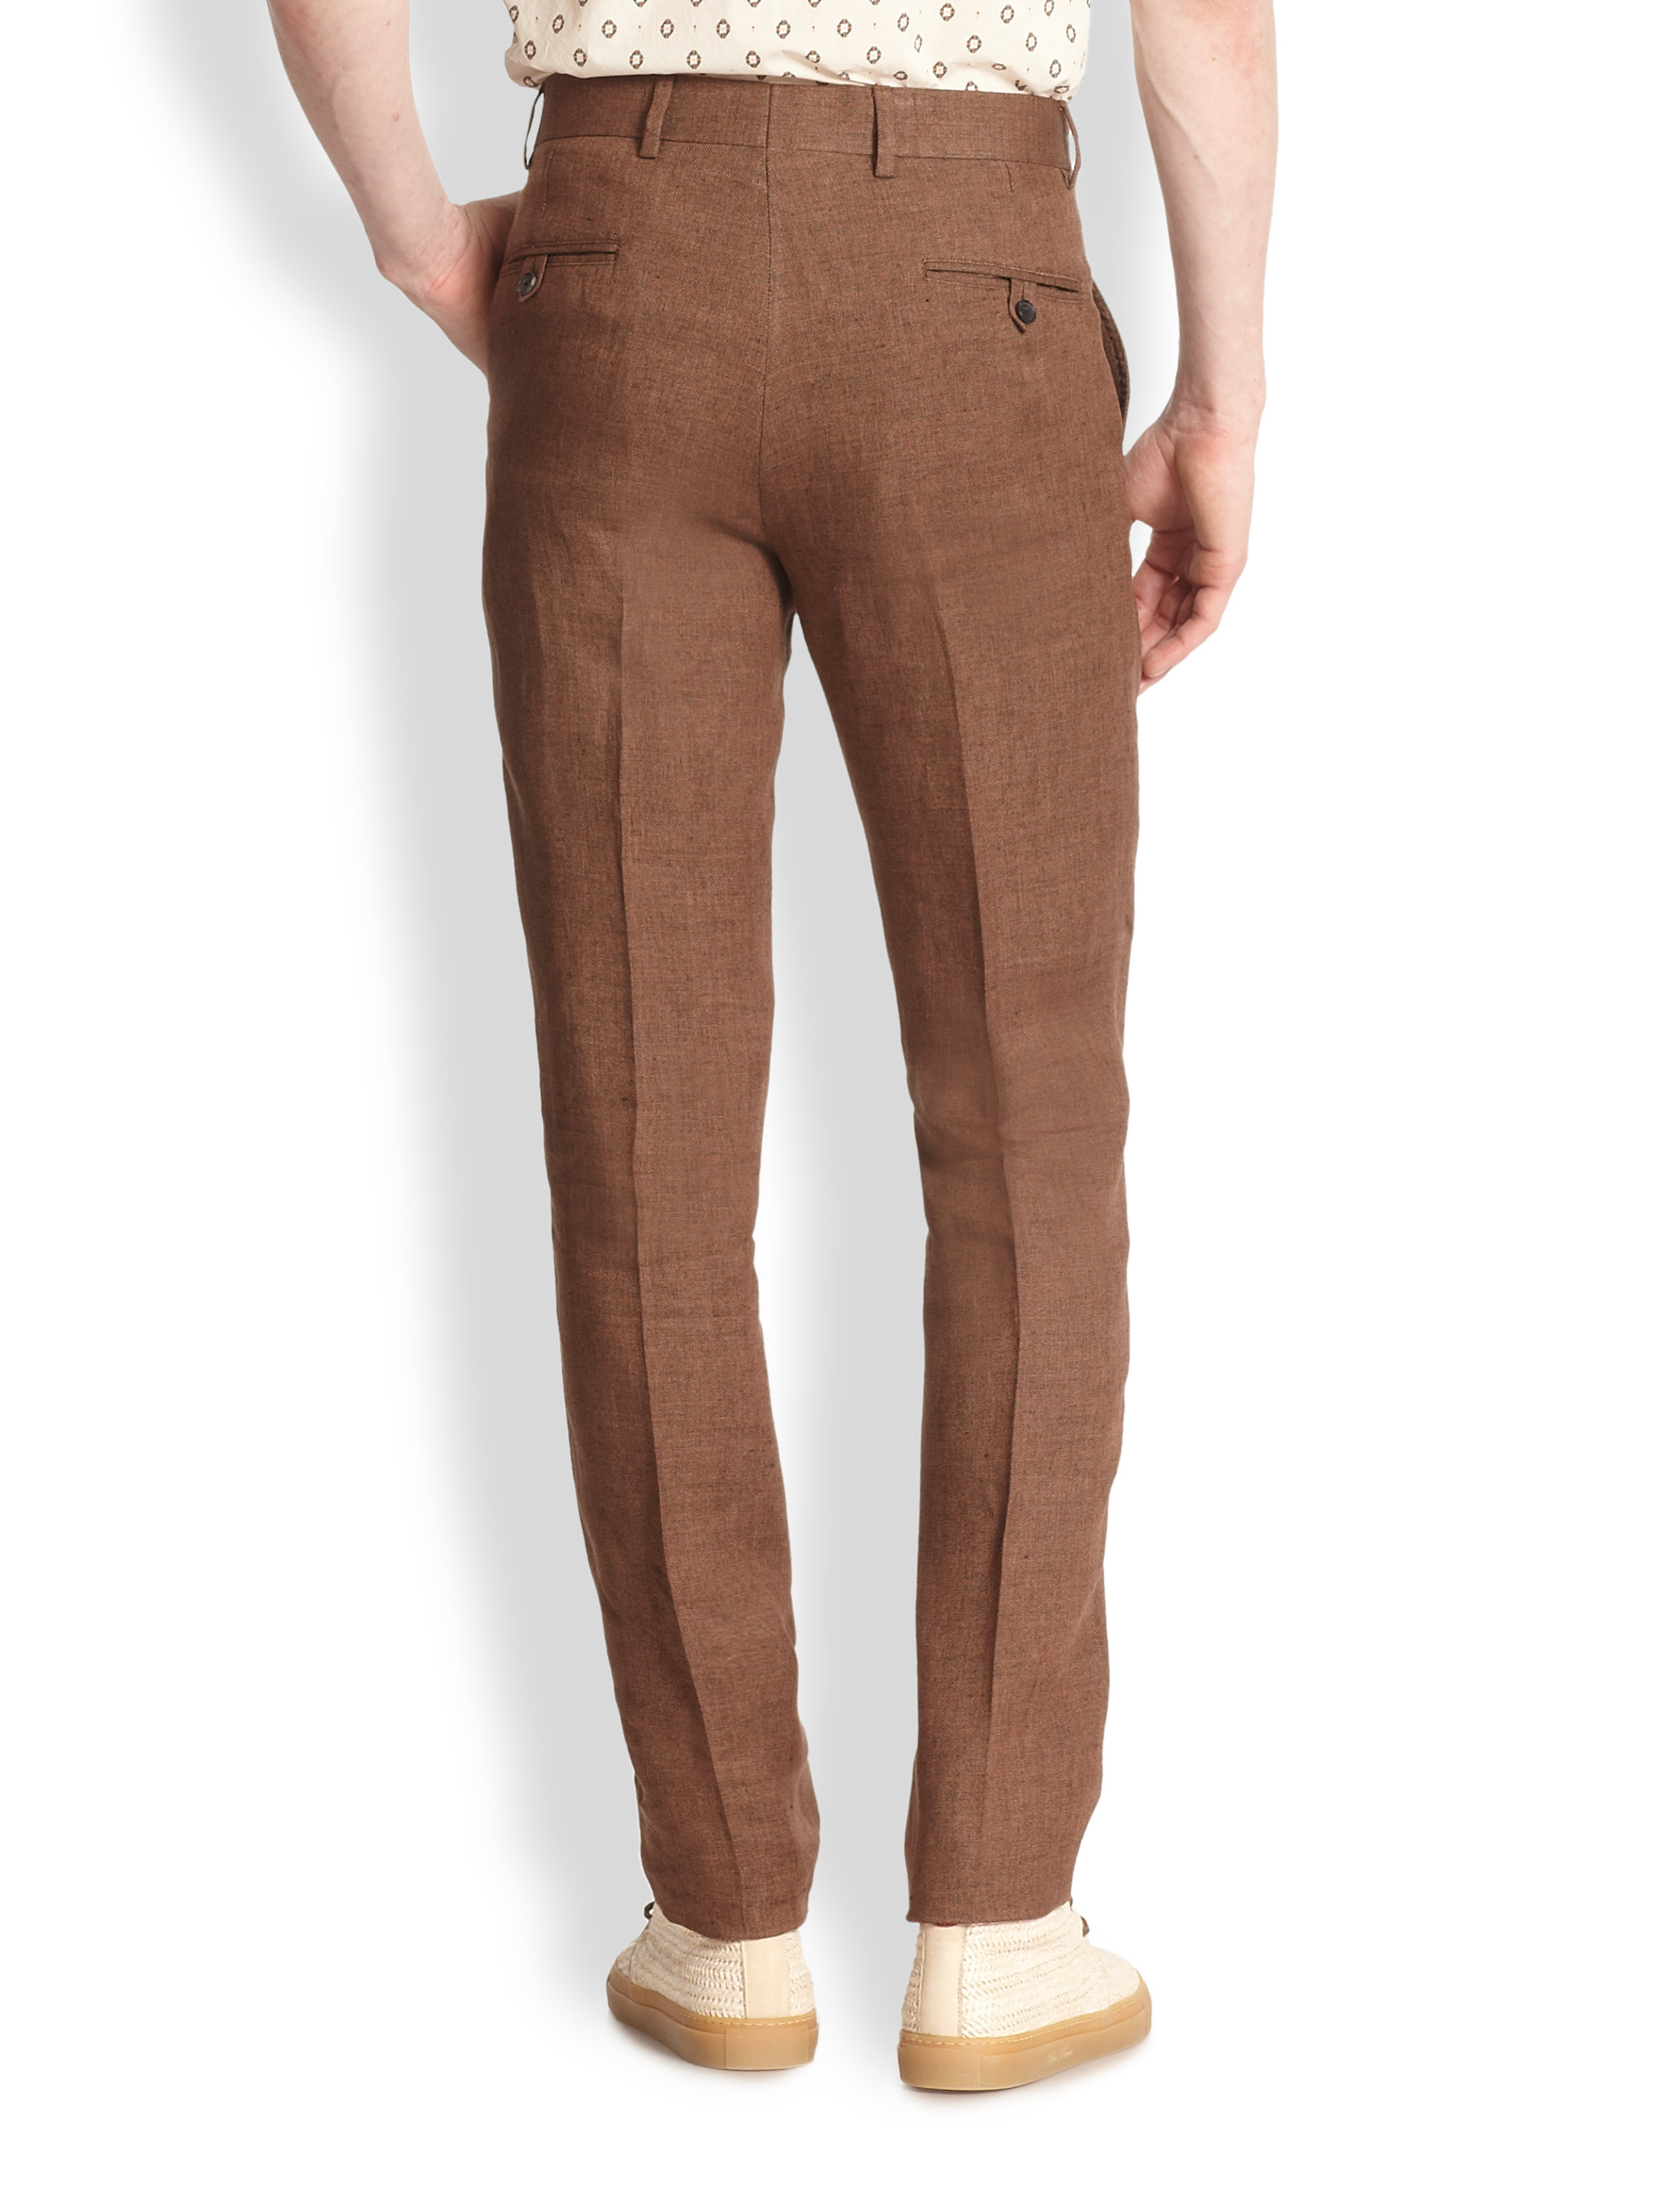 Lyst - Billy Reid Dorsey Linen Pants in Brown for Men